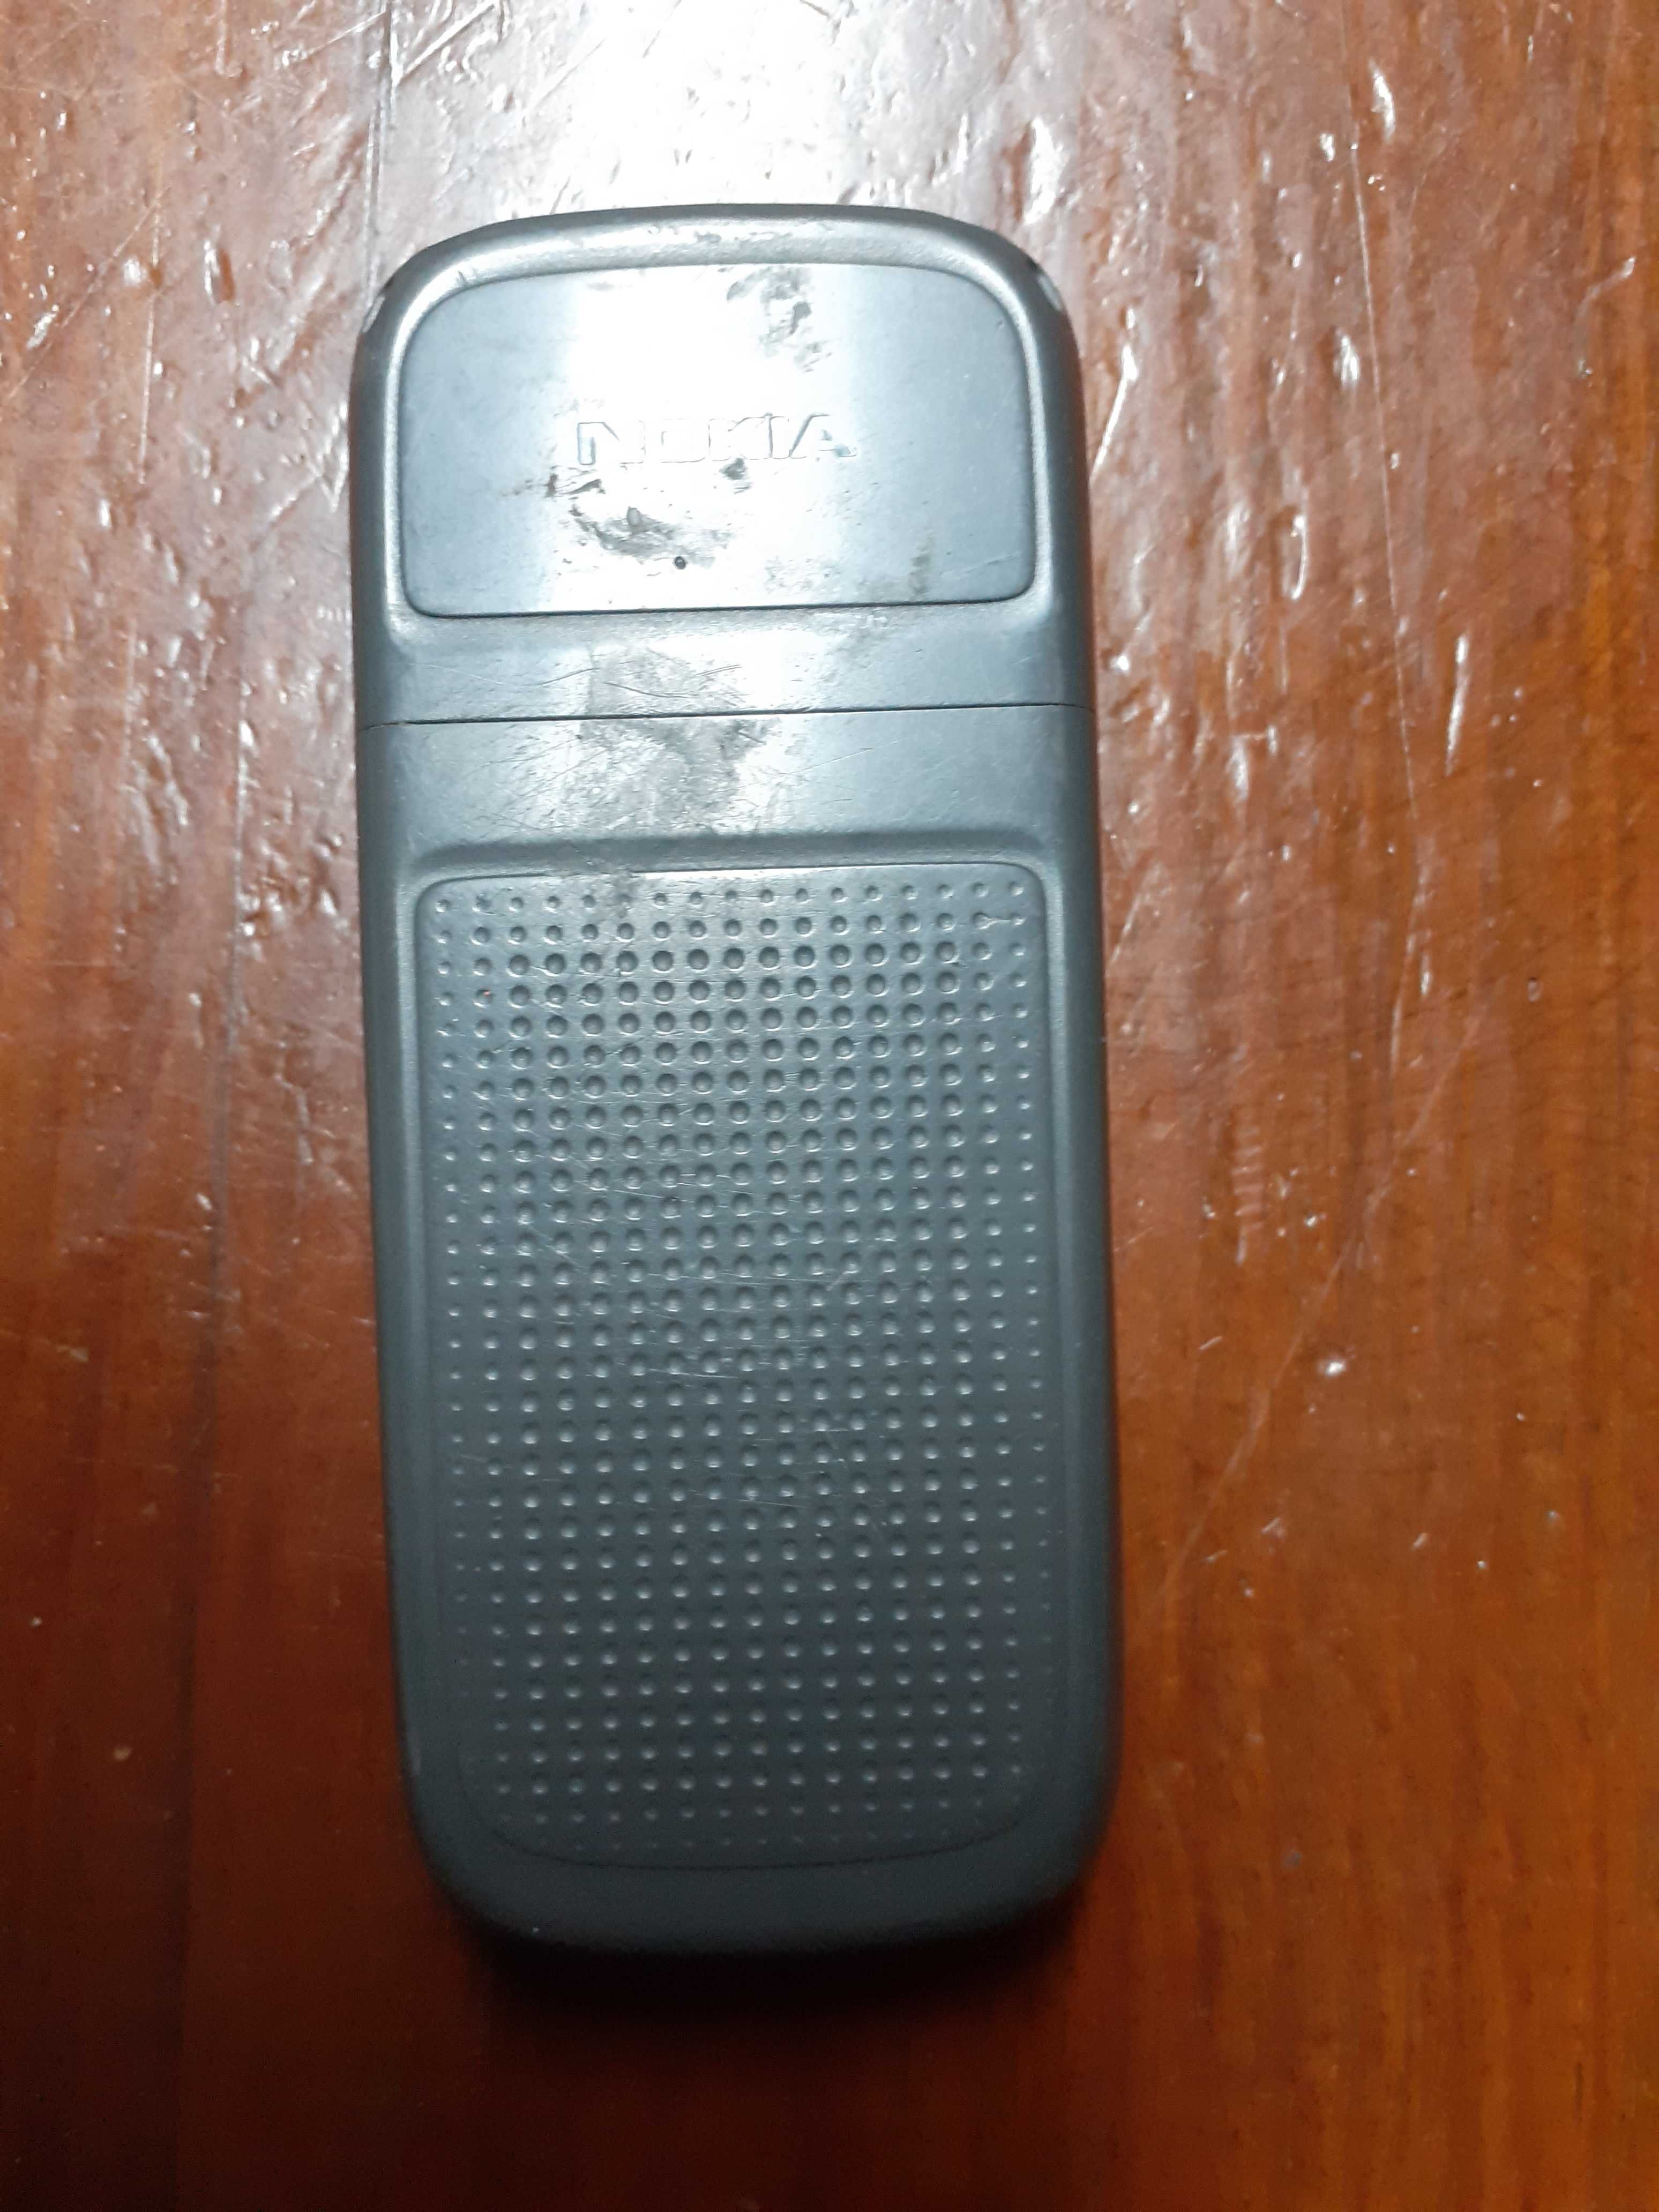 Nokia 1209 sem carregador